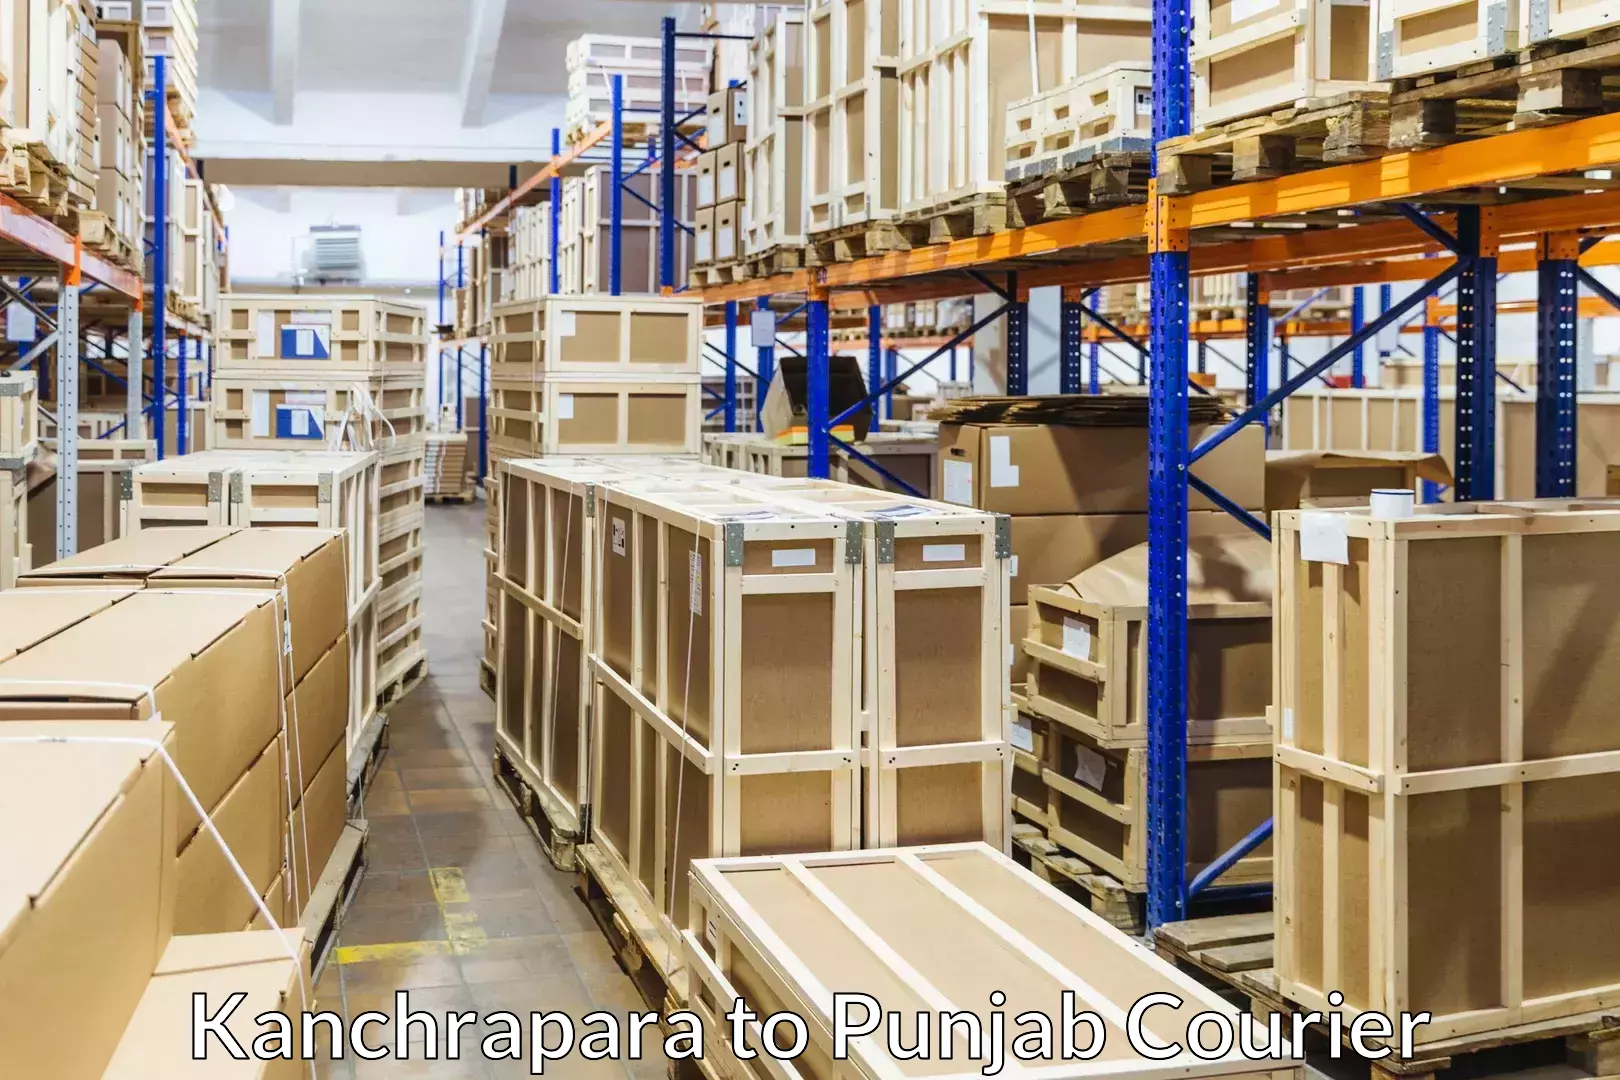 Skilled furniture transporters Kanchrapara to Punjab